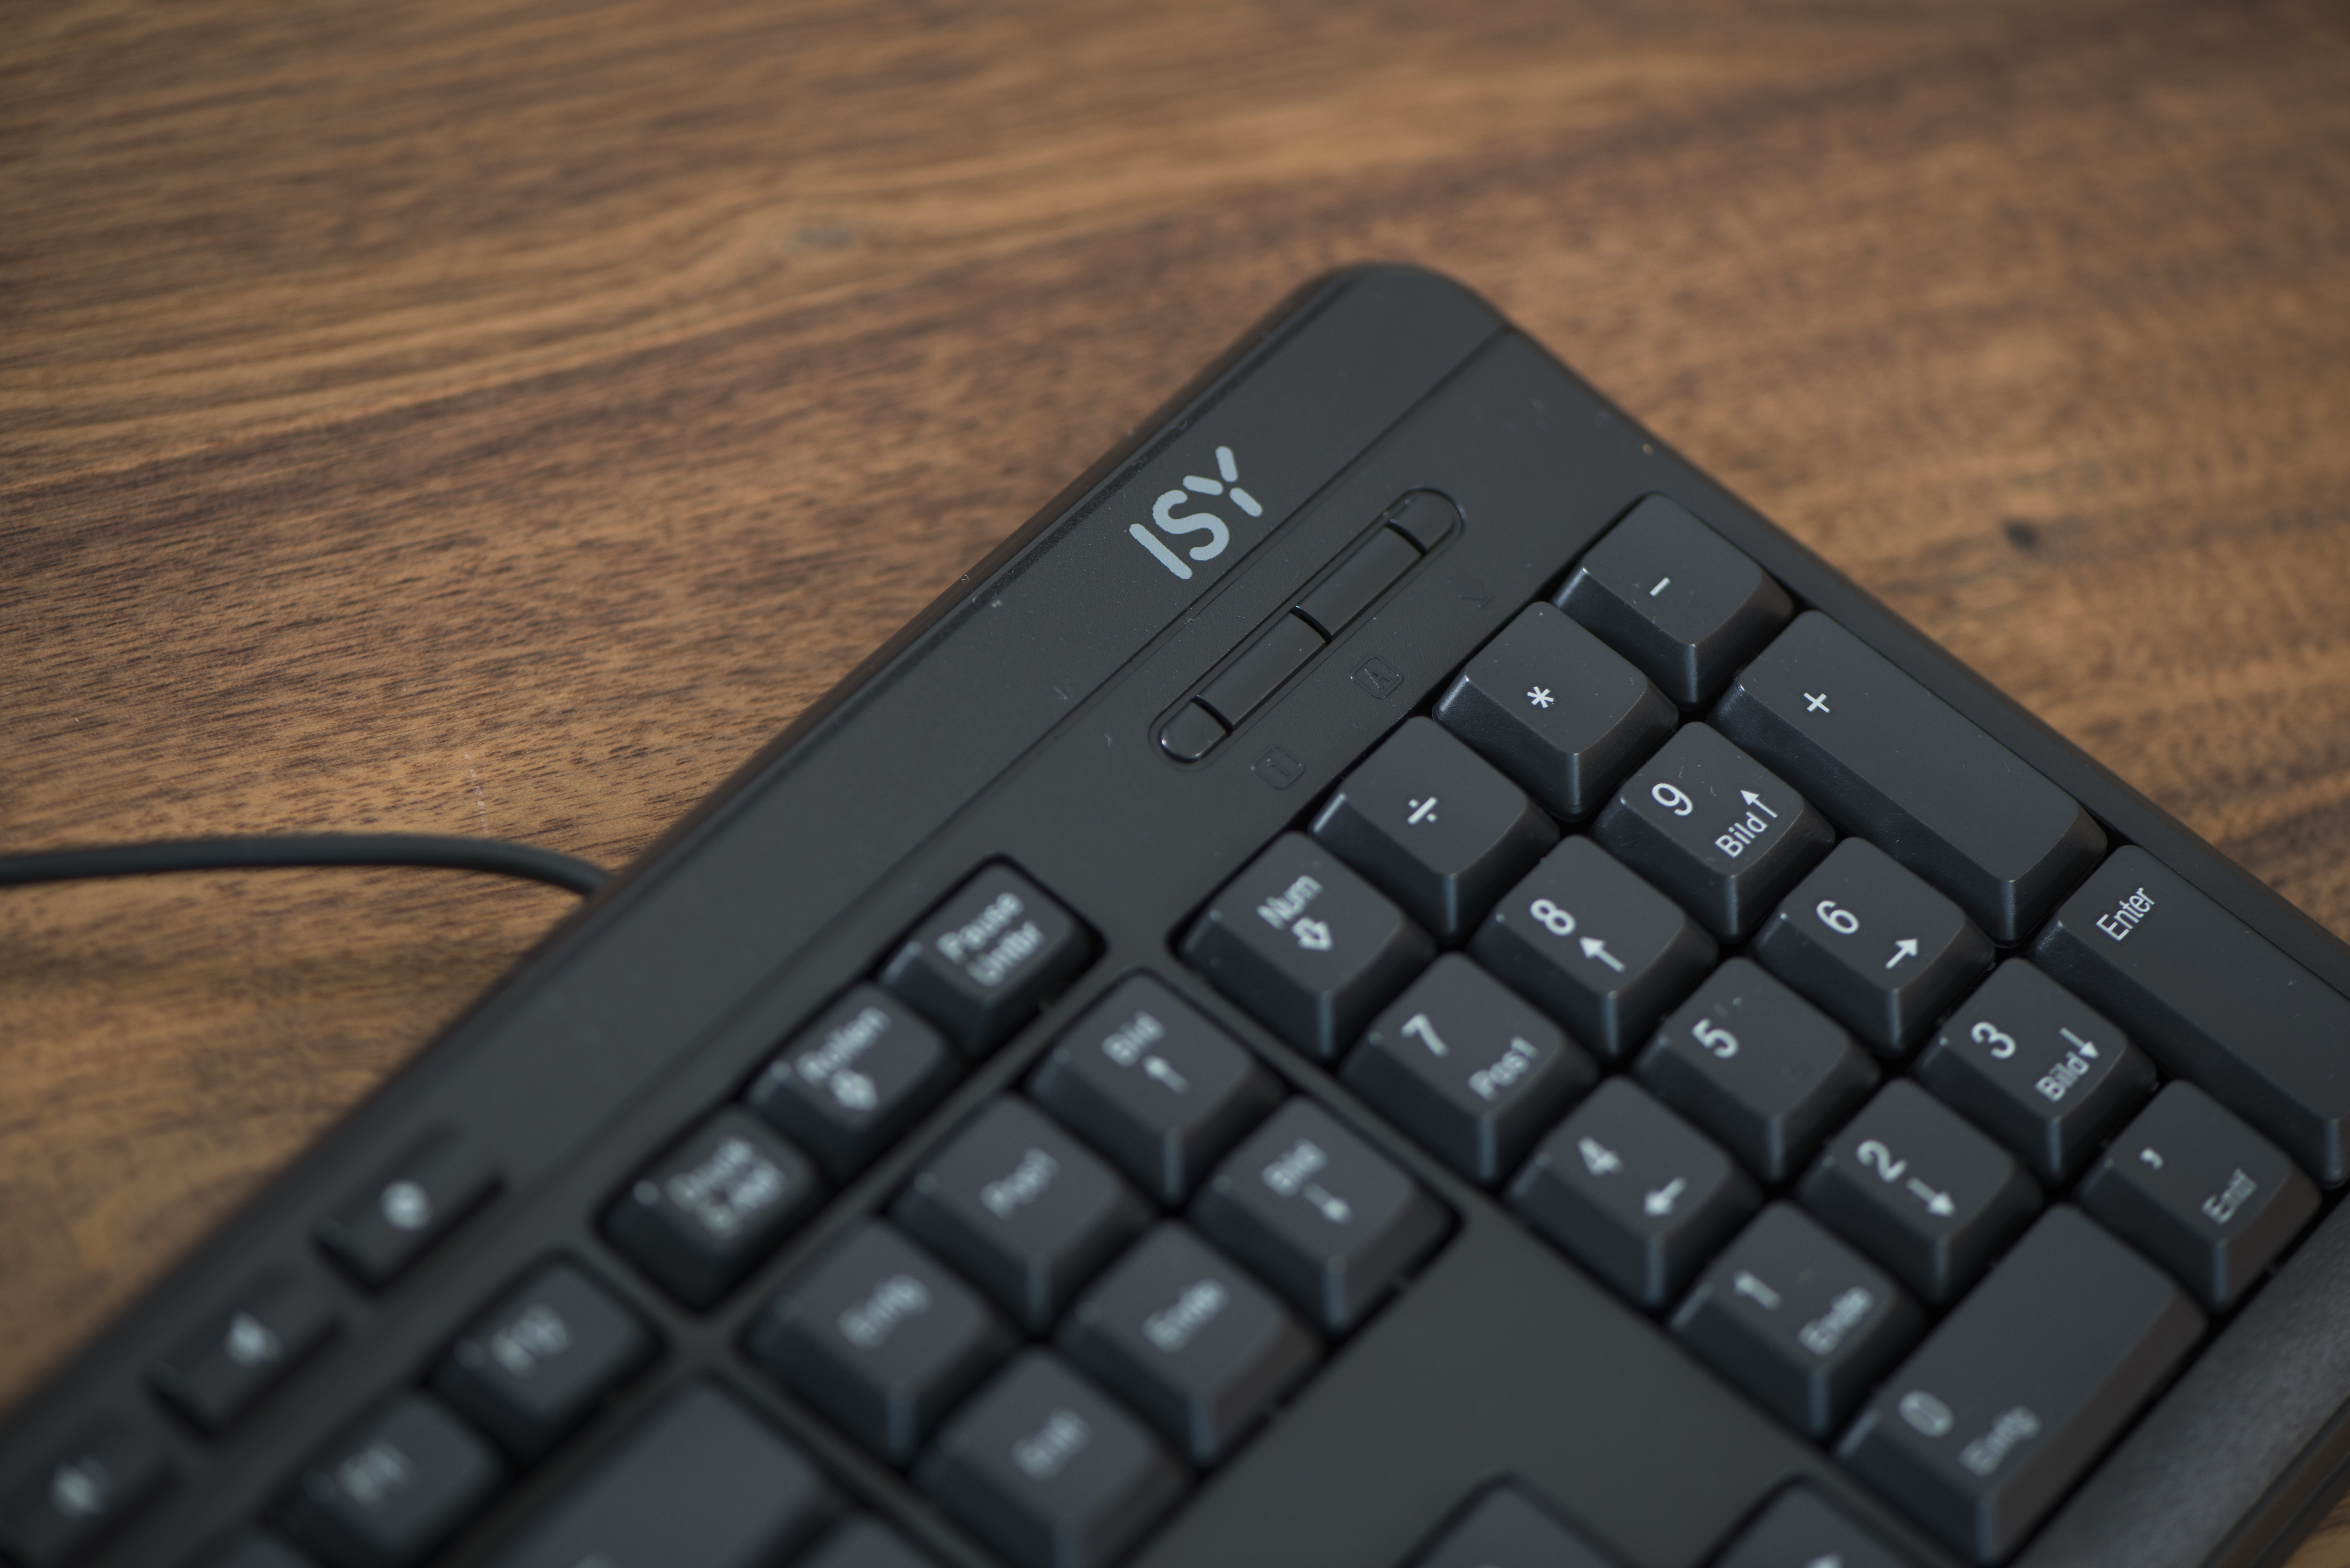 Tastatur, ISY Schwarz IKE-1000, kabelgebunden,